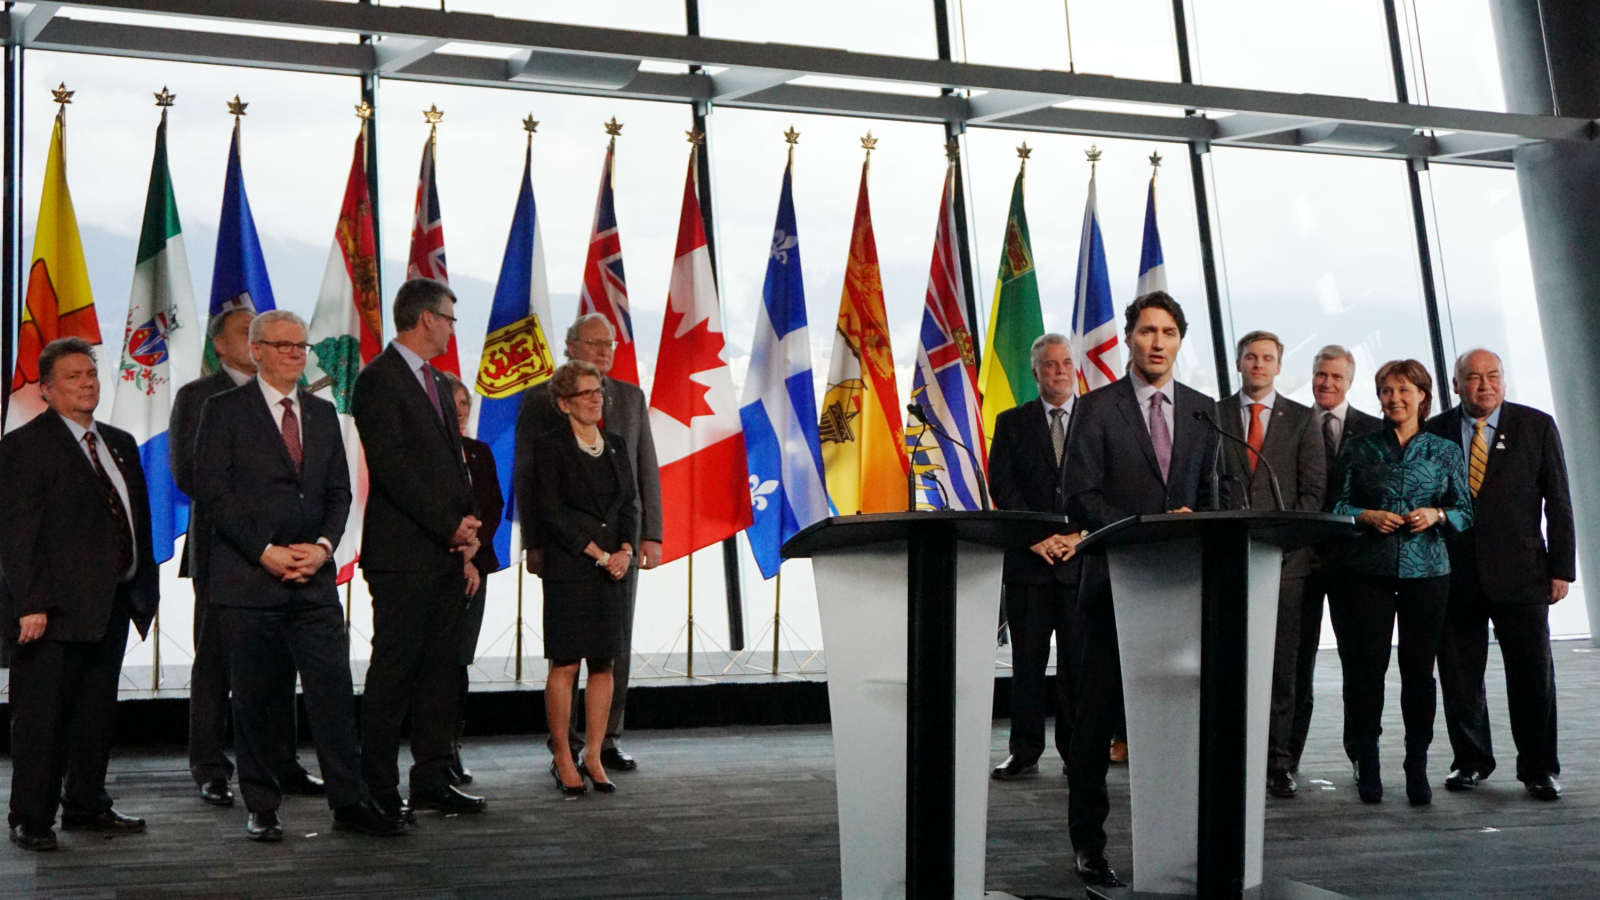 premiers, carbon pricing, carbon tax, Vancouver Declaration, Justin Trudeau 